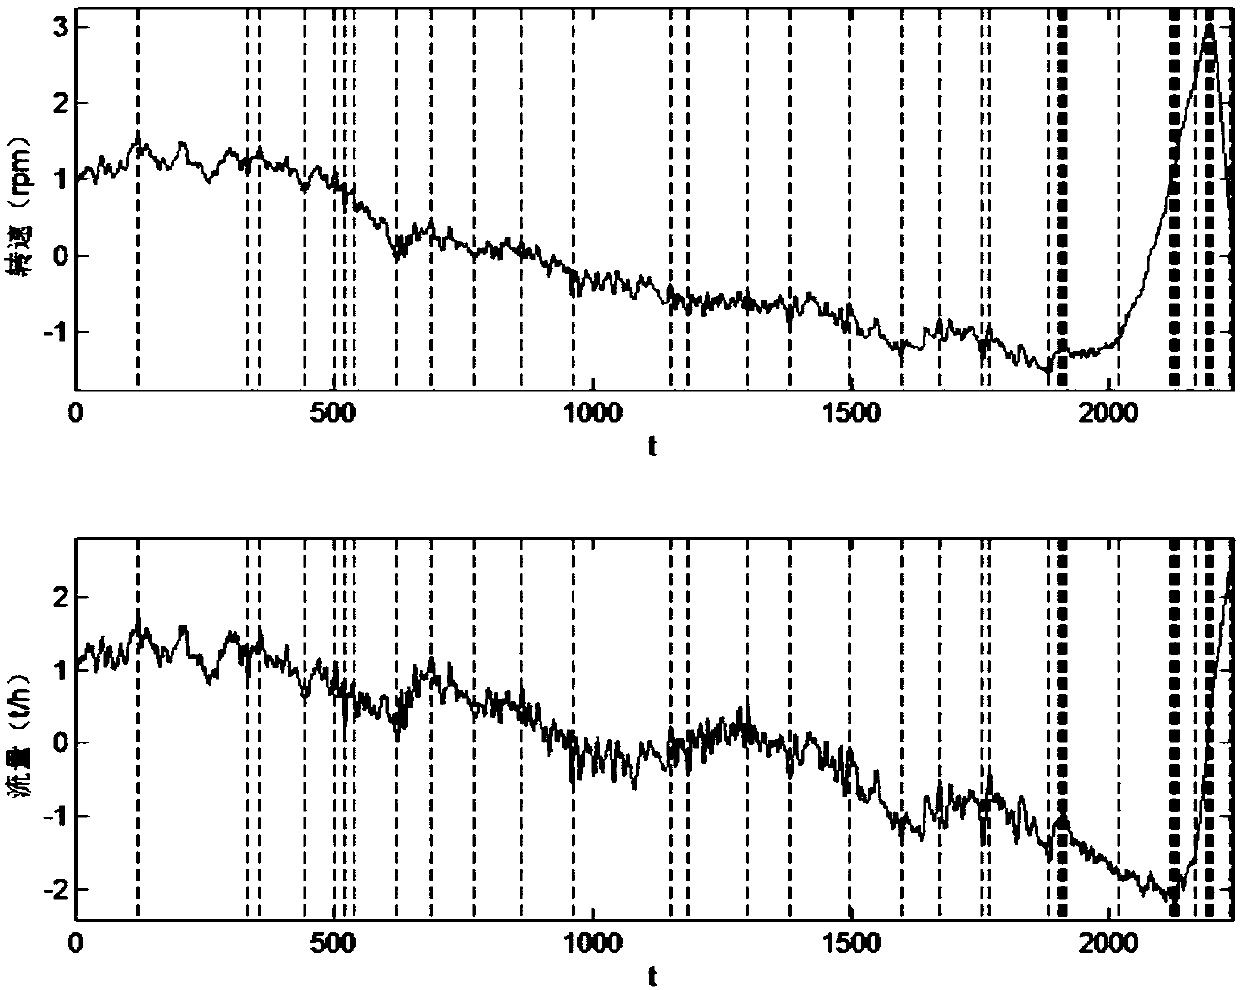 A detection method for abnormal alarm data based on multivariate time series